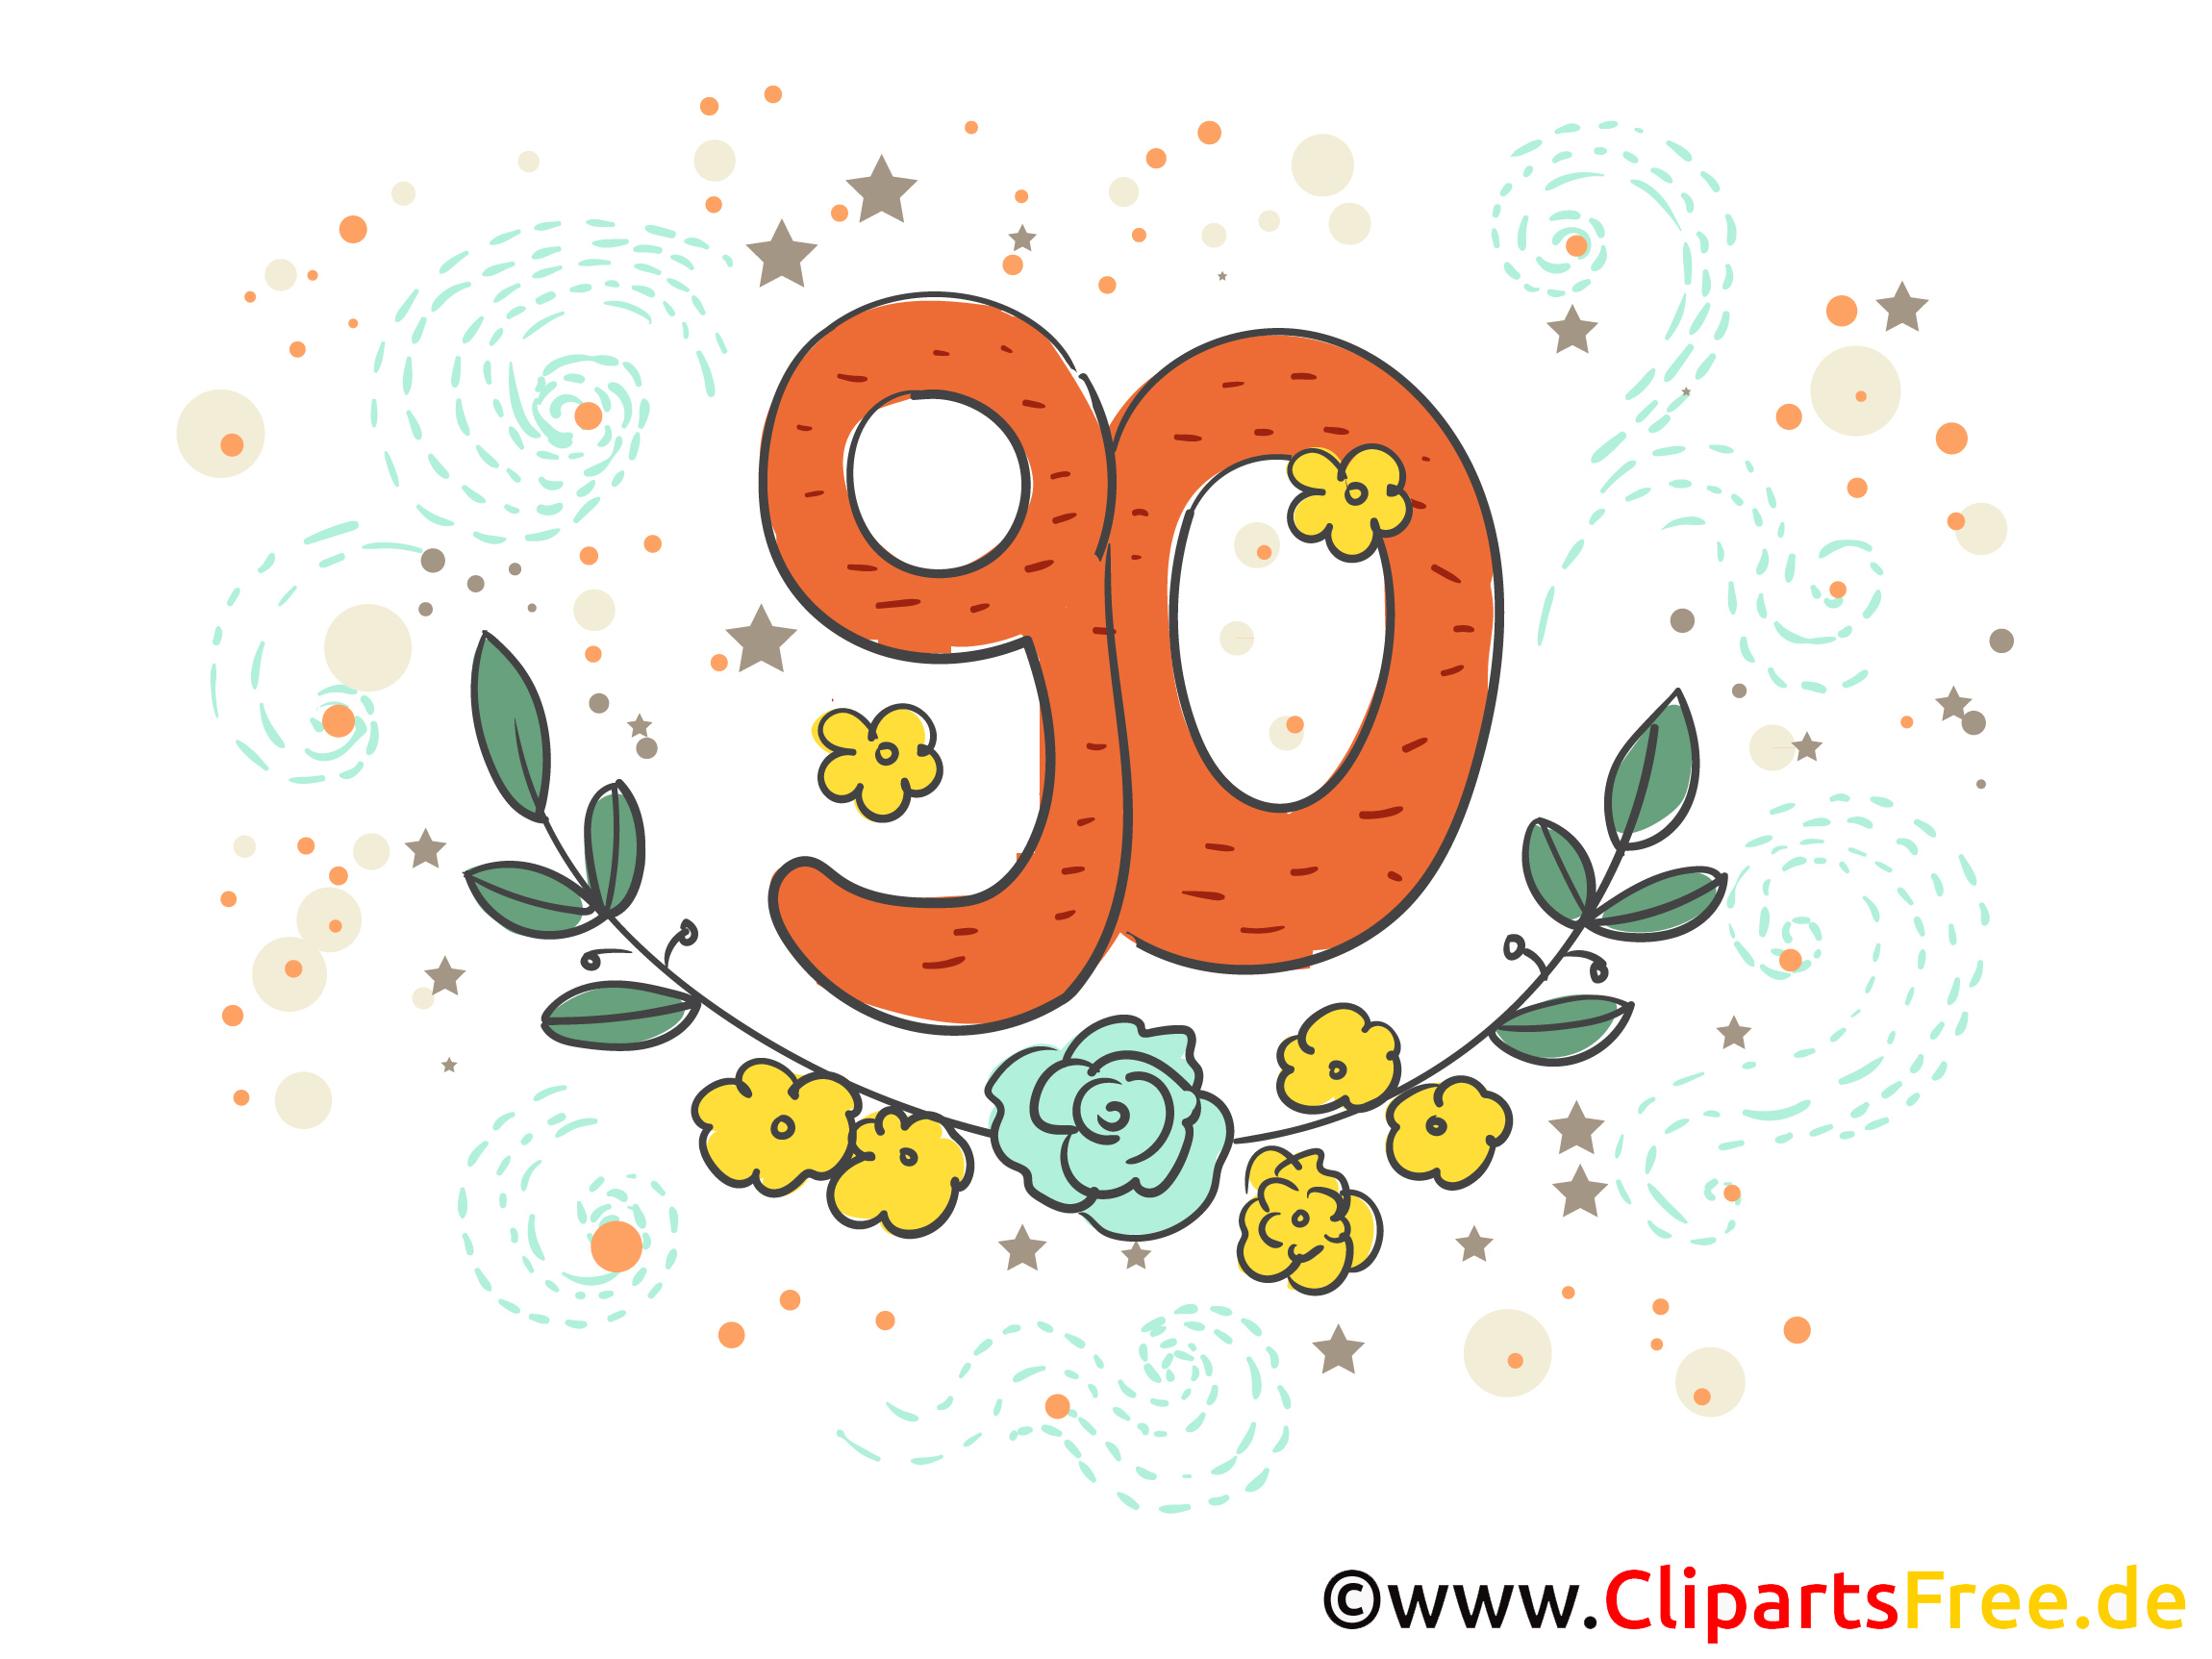 Grusskarte Glückwünsche zum 90. Geburtstag Runde Geburtstage